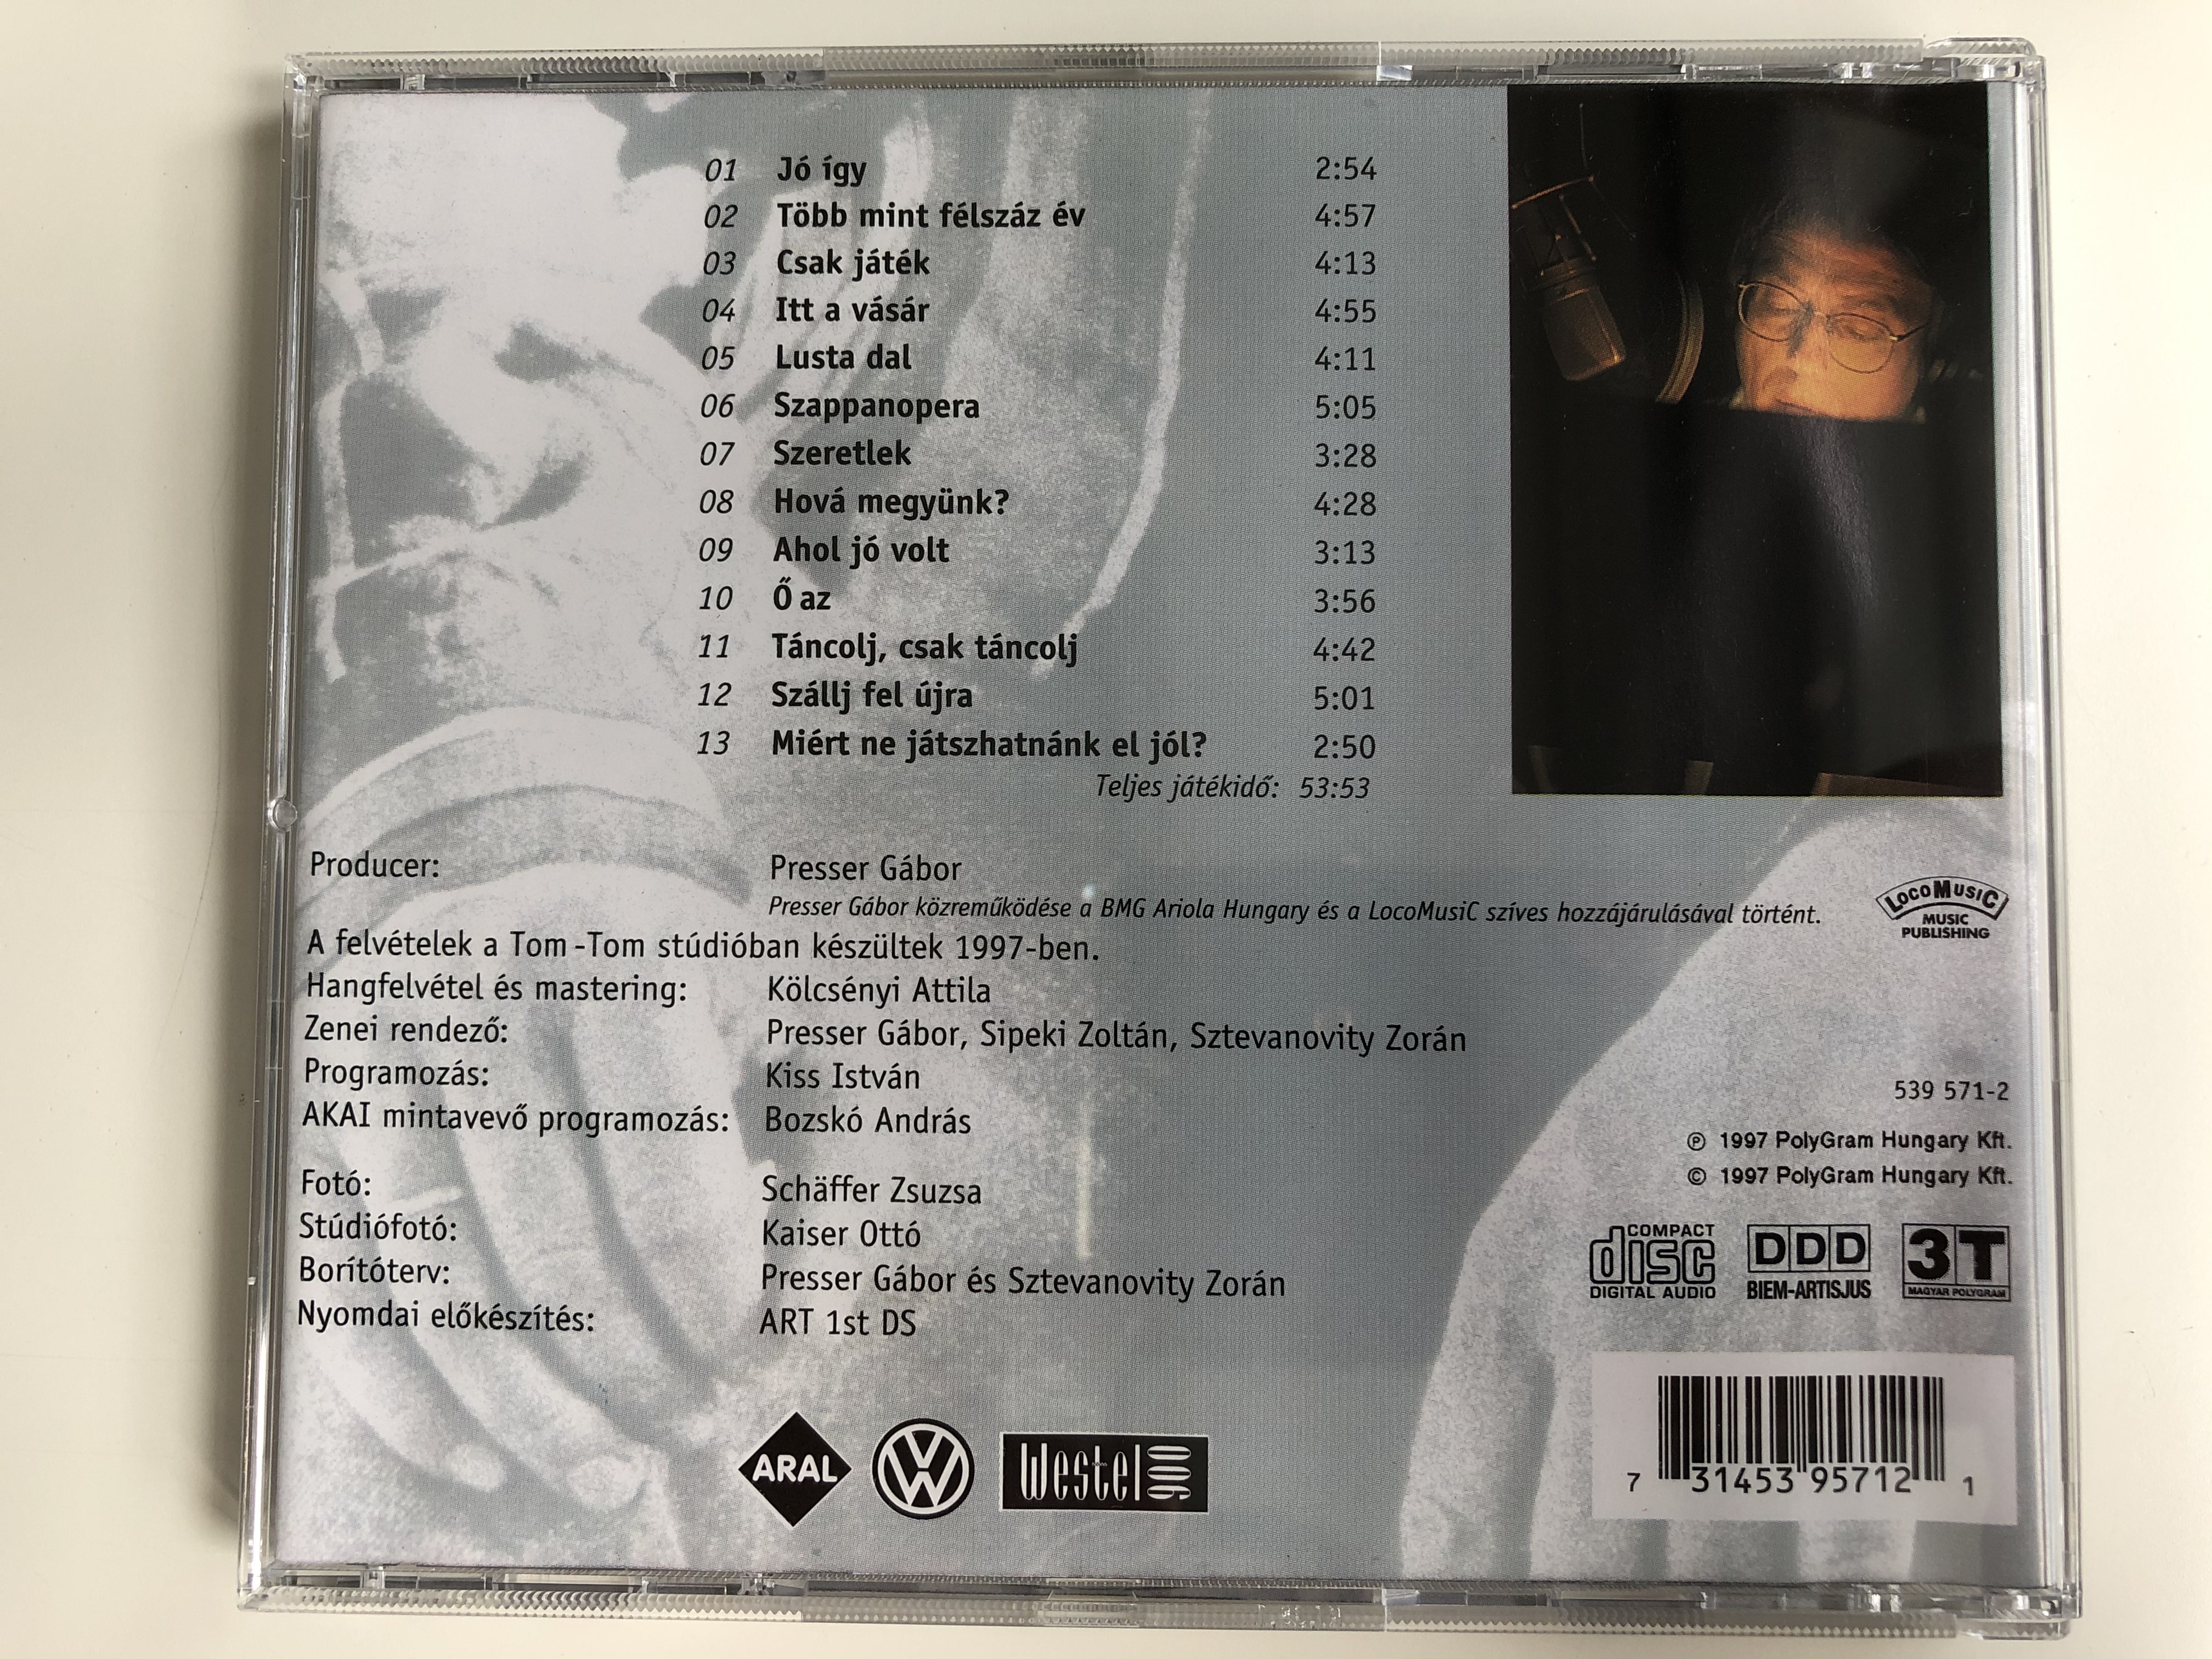 zor-n-1997-3t-audio-cd-1997-539-571-2-4-.jpg